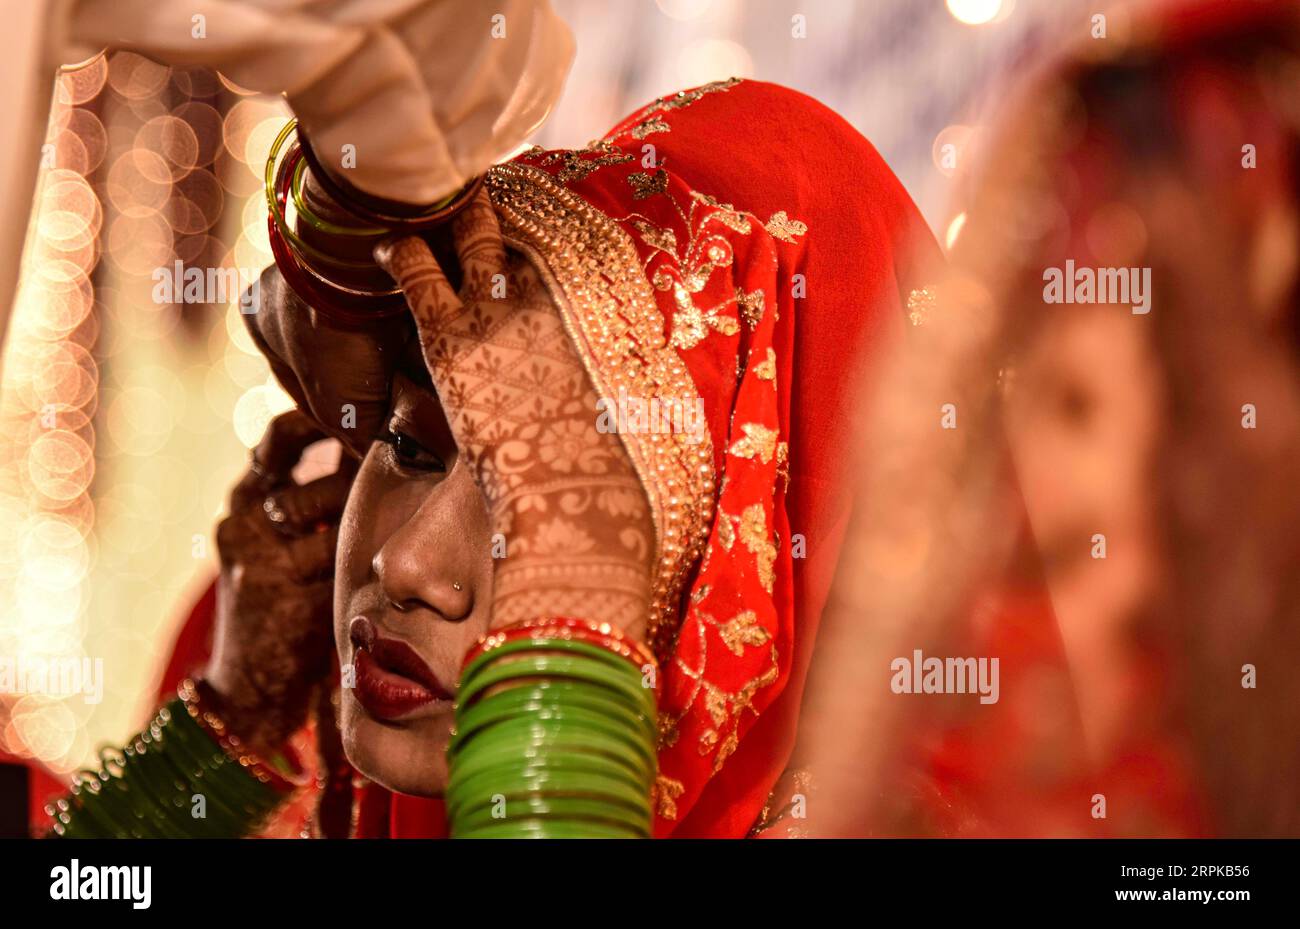 200106 -- MUMBAI, 6. Januar 2020 Xinhua -- eine indische Braut in traditioneller Hochzeitskleidung nimmt an der 14. Jährlichen Massenheirat-Zeremonie in Mumbai, Indien, am 5. Januar 2020 Teil. Rund 53 Paare heirateten während der Zeremonie. Massenhochzeiten in Indien werden von sozialen Organisationen in erster Linie organisiert, um den wirtschaftlich zurückgebliebenen Familien zu helfen, die sich die hohen Zeremoniekosten sowie die übliche Mitgift und teure Geschenke, die in vielen Gemeinden immer noch verbreitet sind, nicht leisten können. Foto von Fariha Farooqui/Xinhua INDIA-MUMBAI-MASS WEDDING PUBLICATIONxNOTxINxCHN Stockfoto